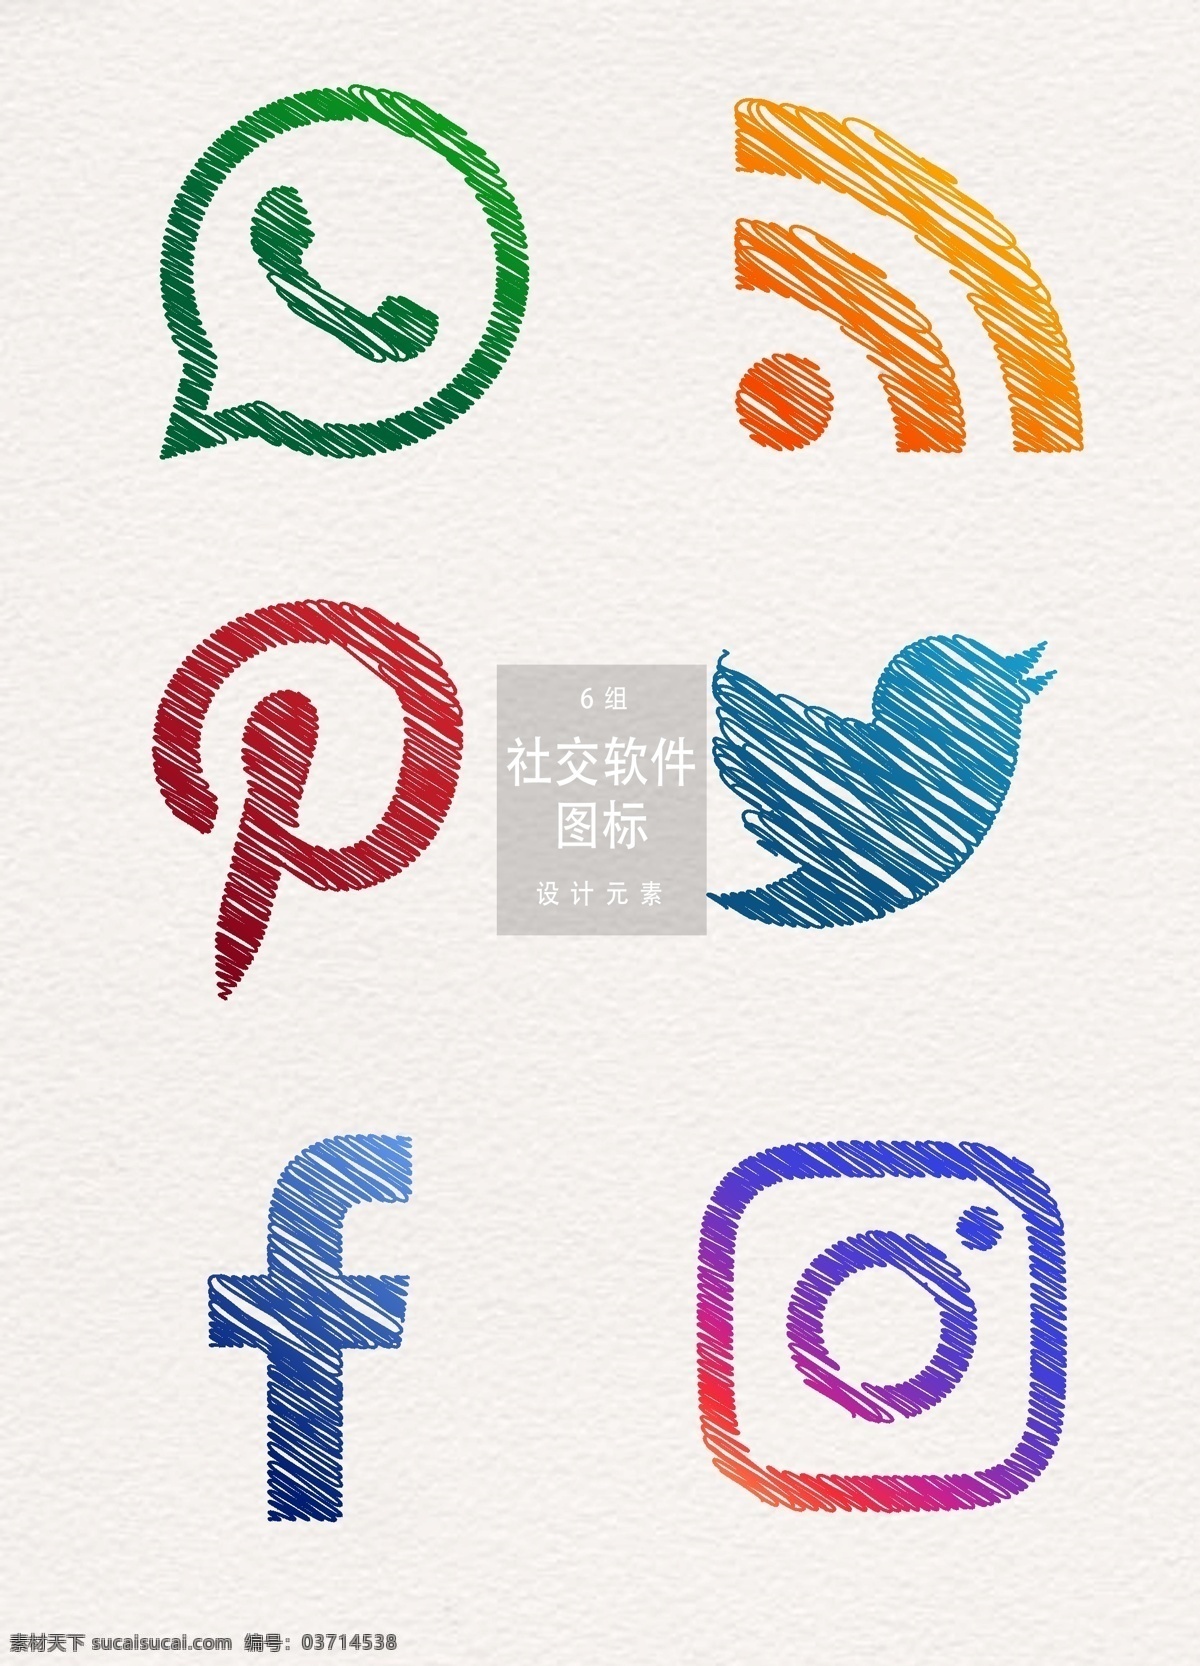 手绘 创意 社交 软件 图标 元素 图标设计 软件图标 app app图标 社交软件 社交软件图标 社交图标 手绘图标 创意图标